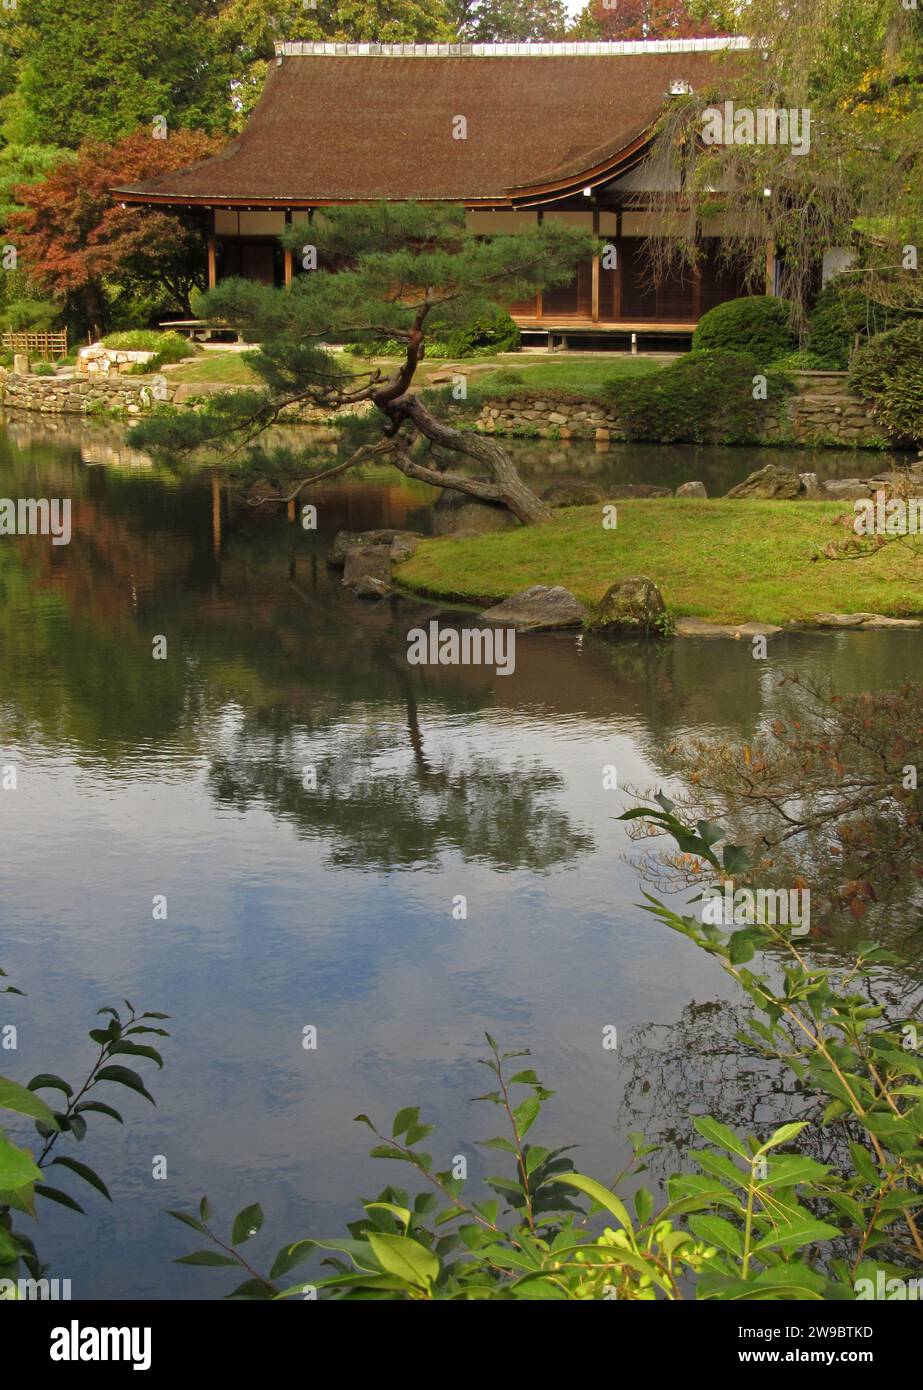 Shofuso Japanese House in Philadelphias Fairmount Park, einem historischen Wahrzeichen, das 1953 erbaut wurde und einem japanischen Haus und Garten aus dem 17. Jahrhundert nachempfunden ist. Stockfoto